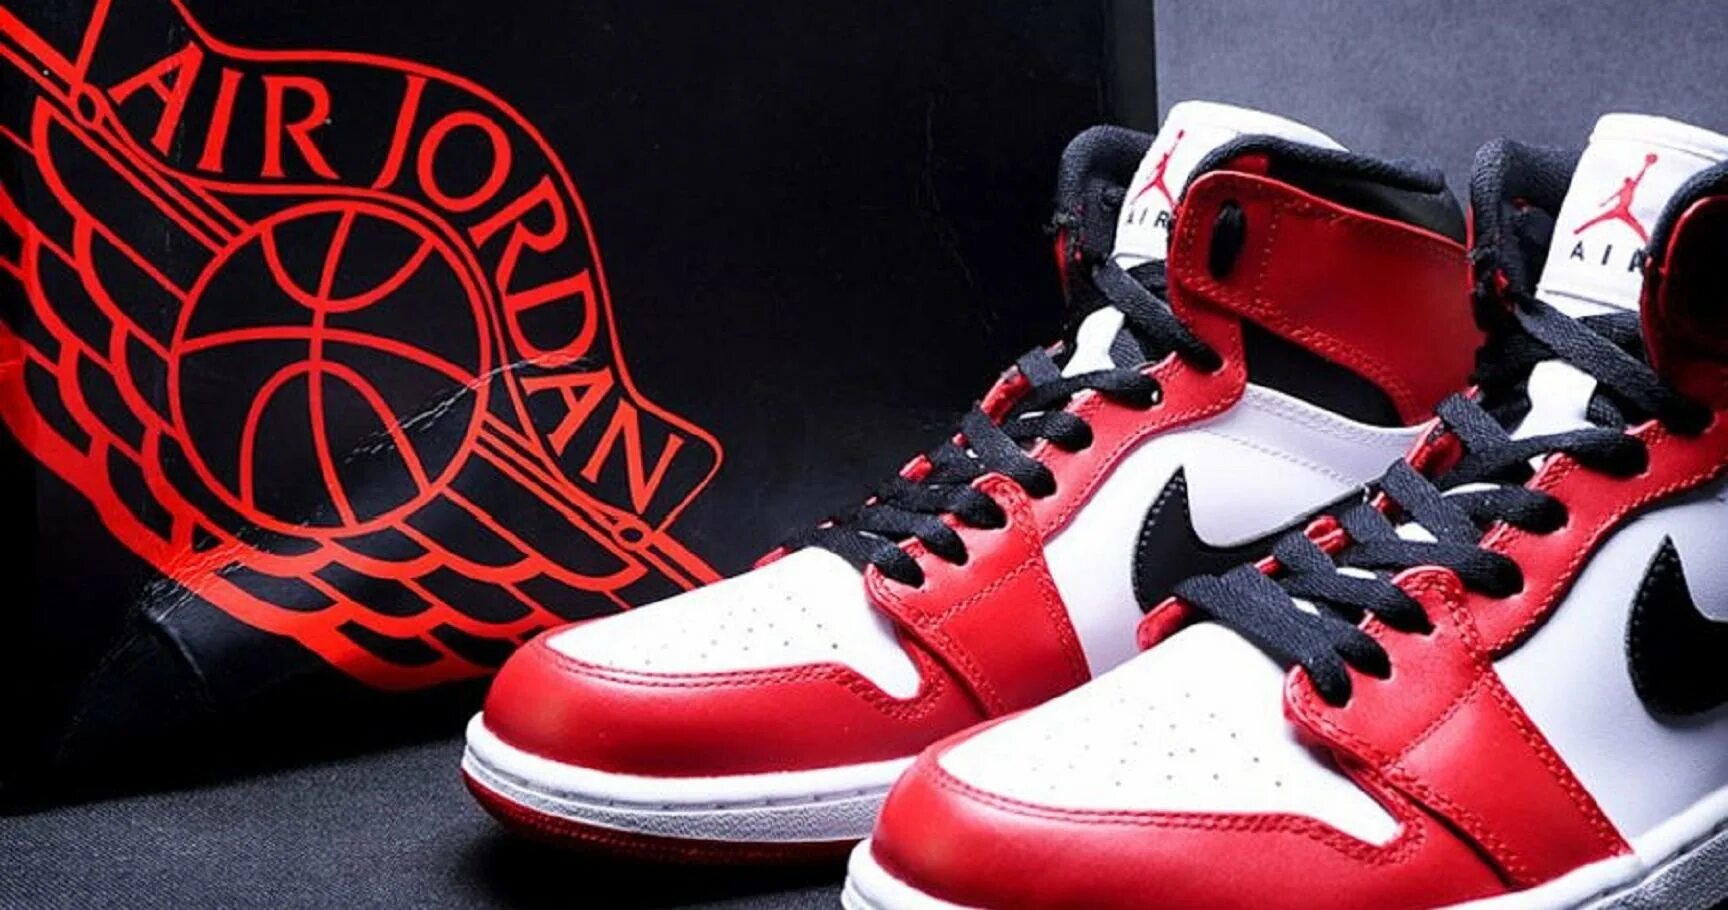 Nike Air Jordan 1 Retro. Nike Air Jordan 1 Retro Chicago. Nike Air Jordan 1 Chicago. Джорданы 1 оригинал